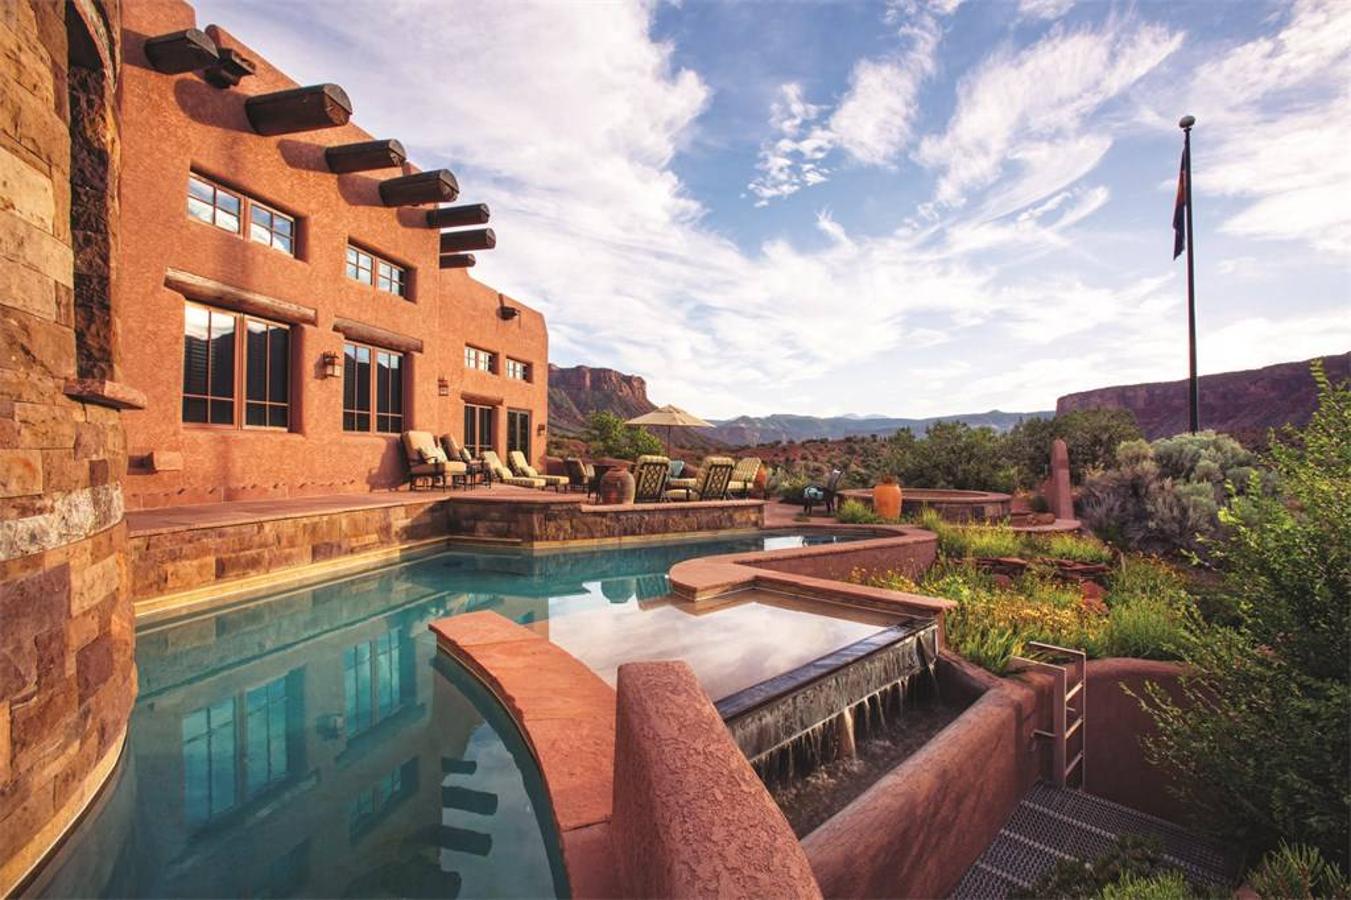 La vivienda ocupa más de 3.500 metros cuadrados divididos en varias plantas y rodeados de un vasto jardín con piscina.